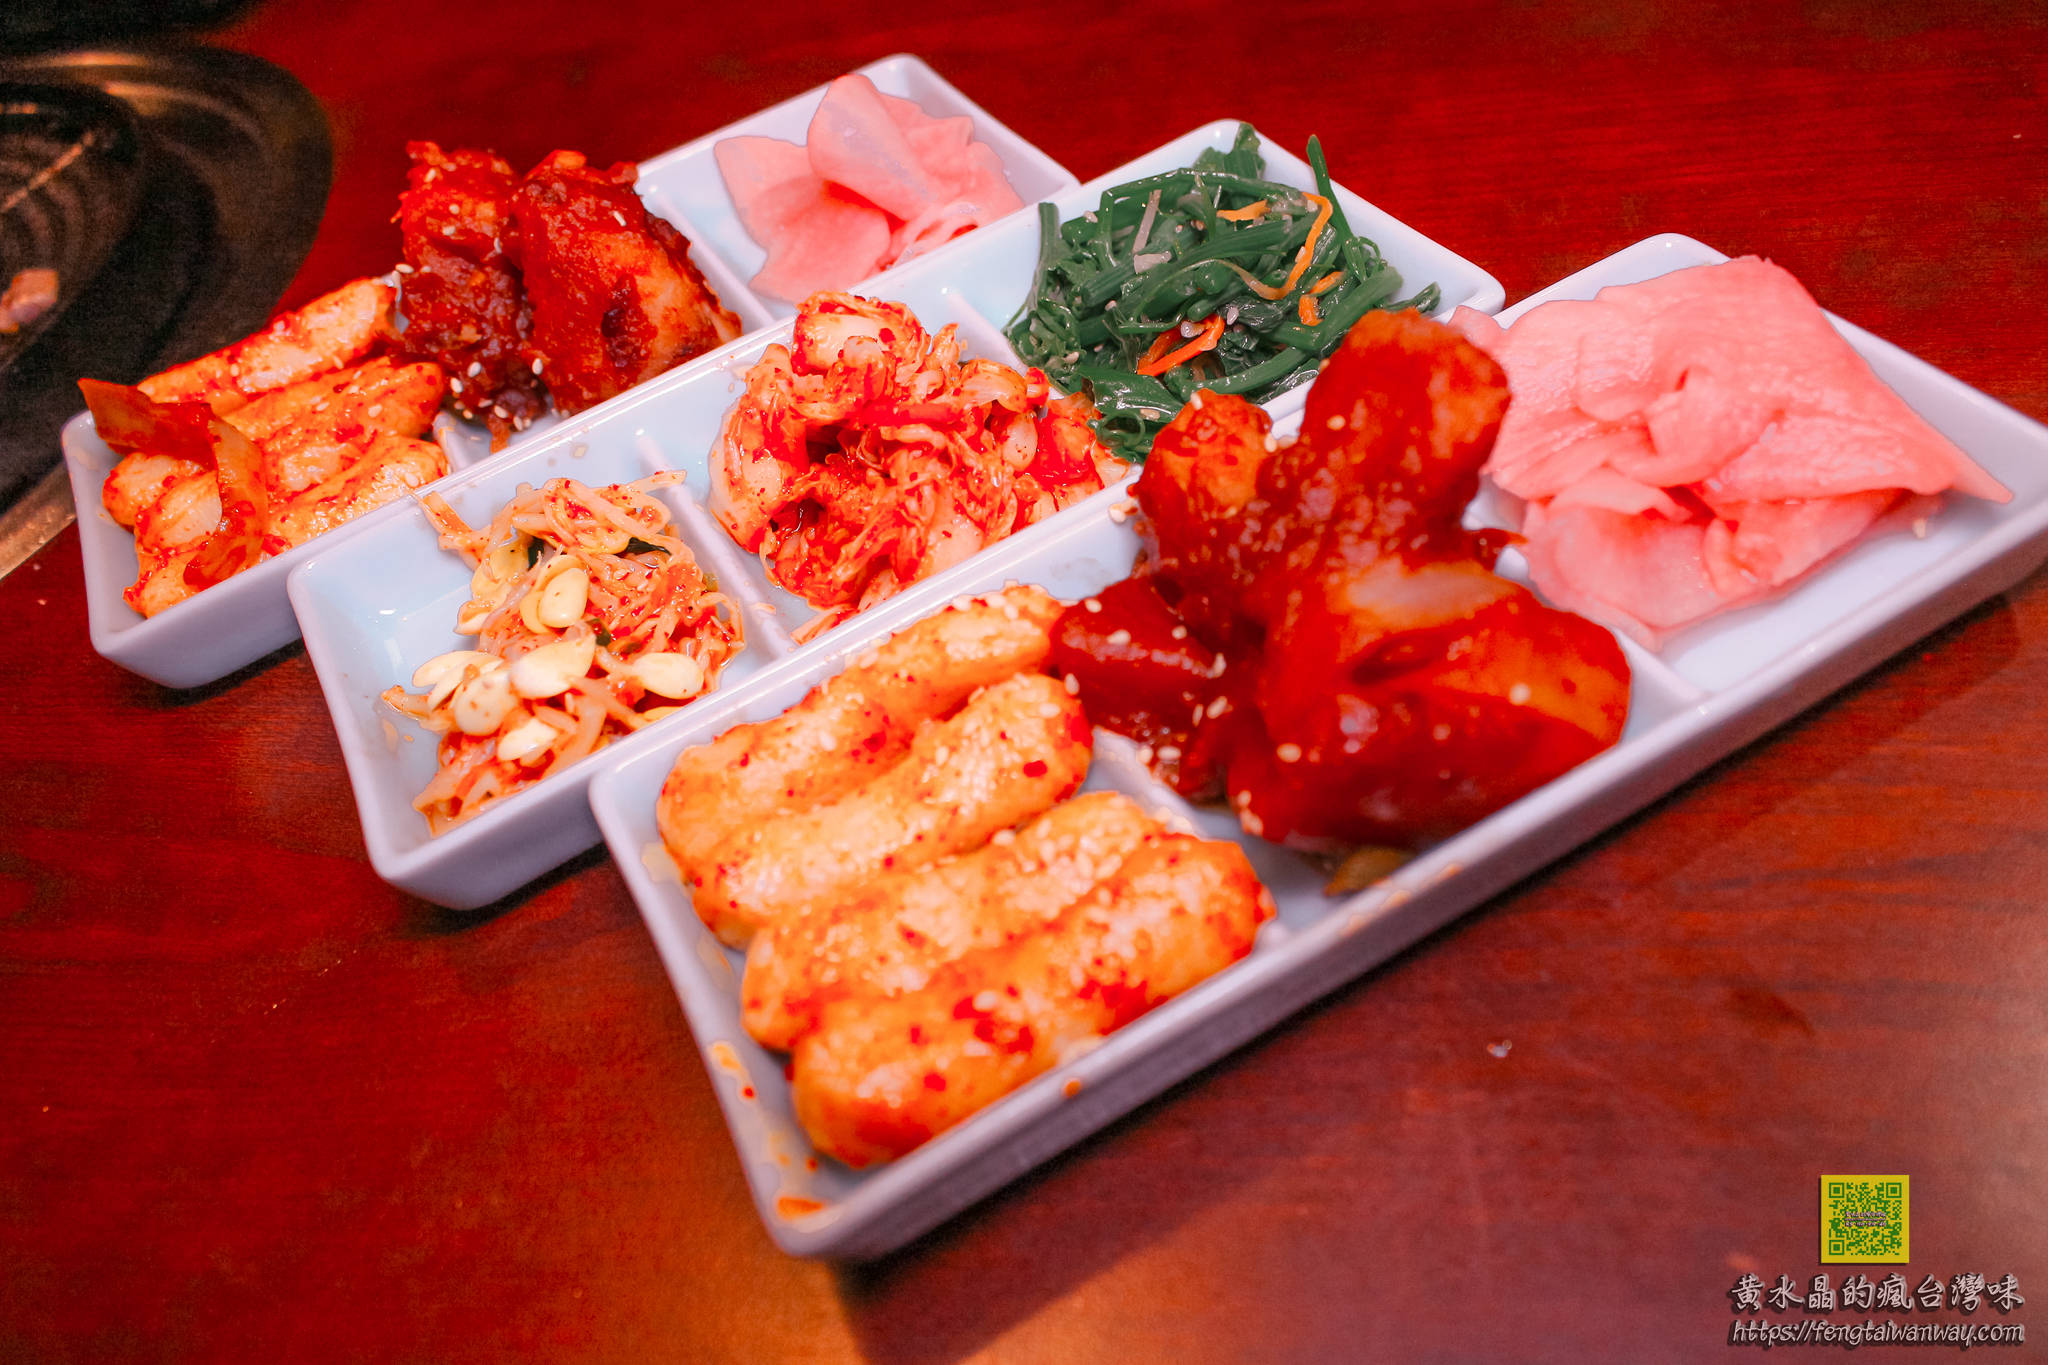 韓金館【台北美食】|台北網美必來餐廳；韓式料理&韓國烤肉&韓國鍋物；還可韓服試穿體驗